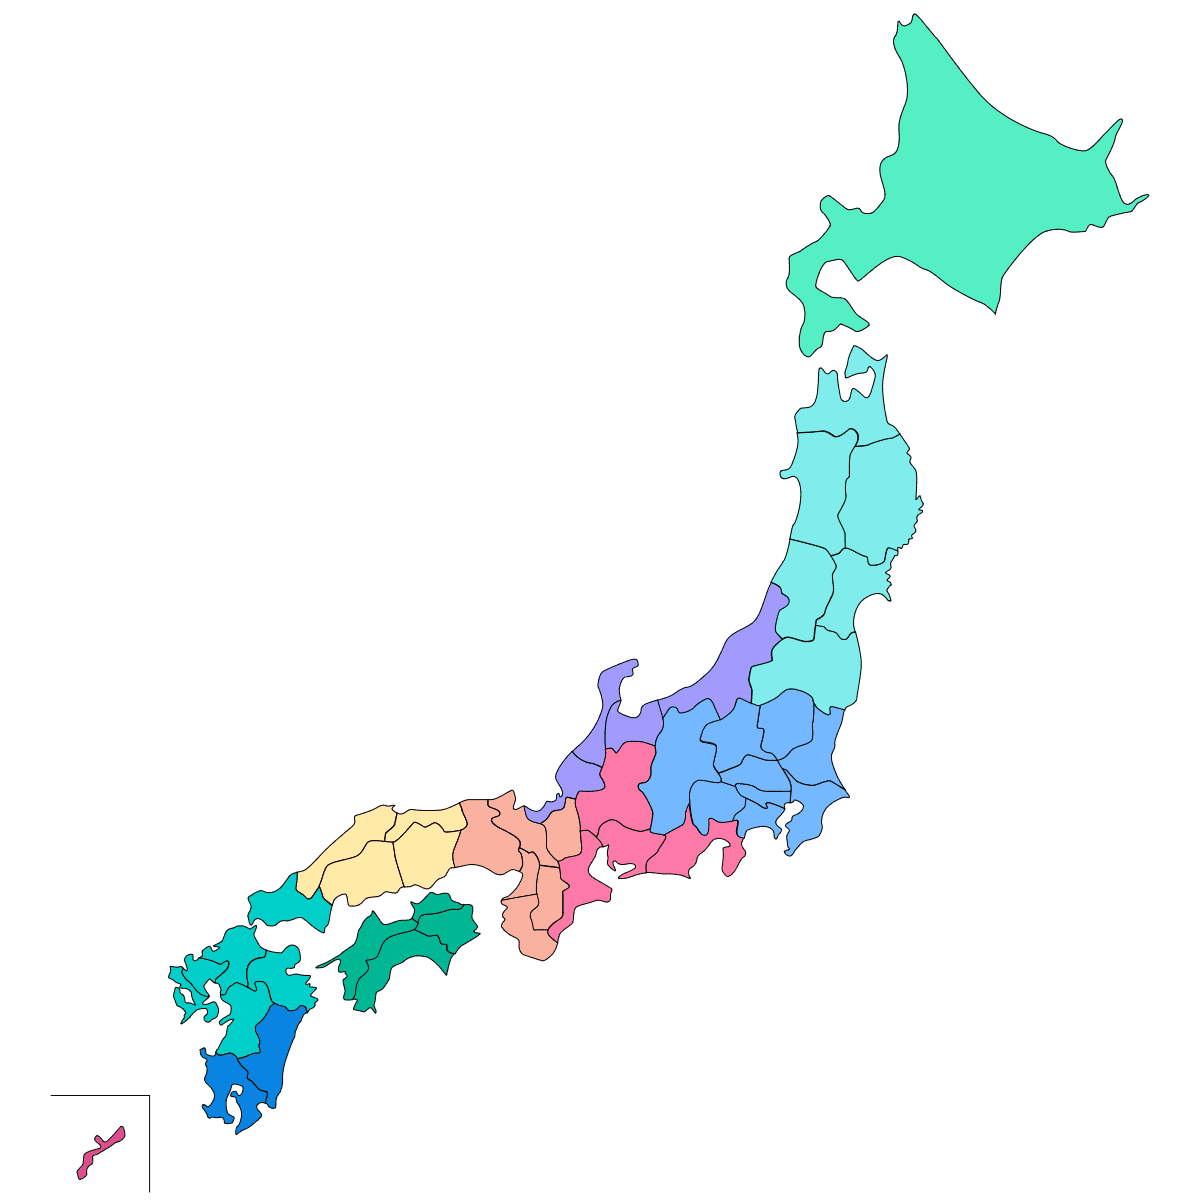 日本の地域区分について 解説 説明 知識 シマウマ用語集